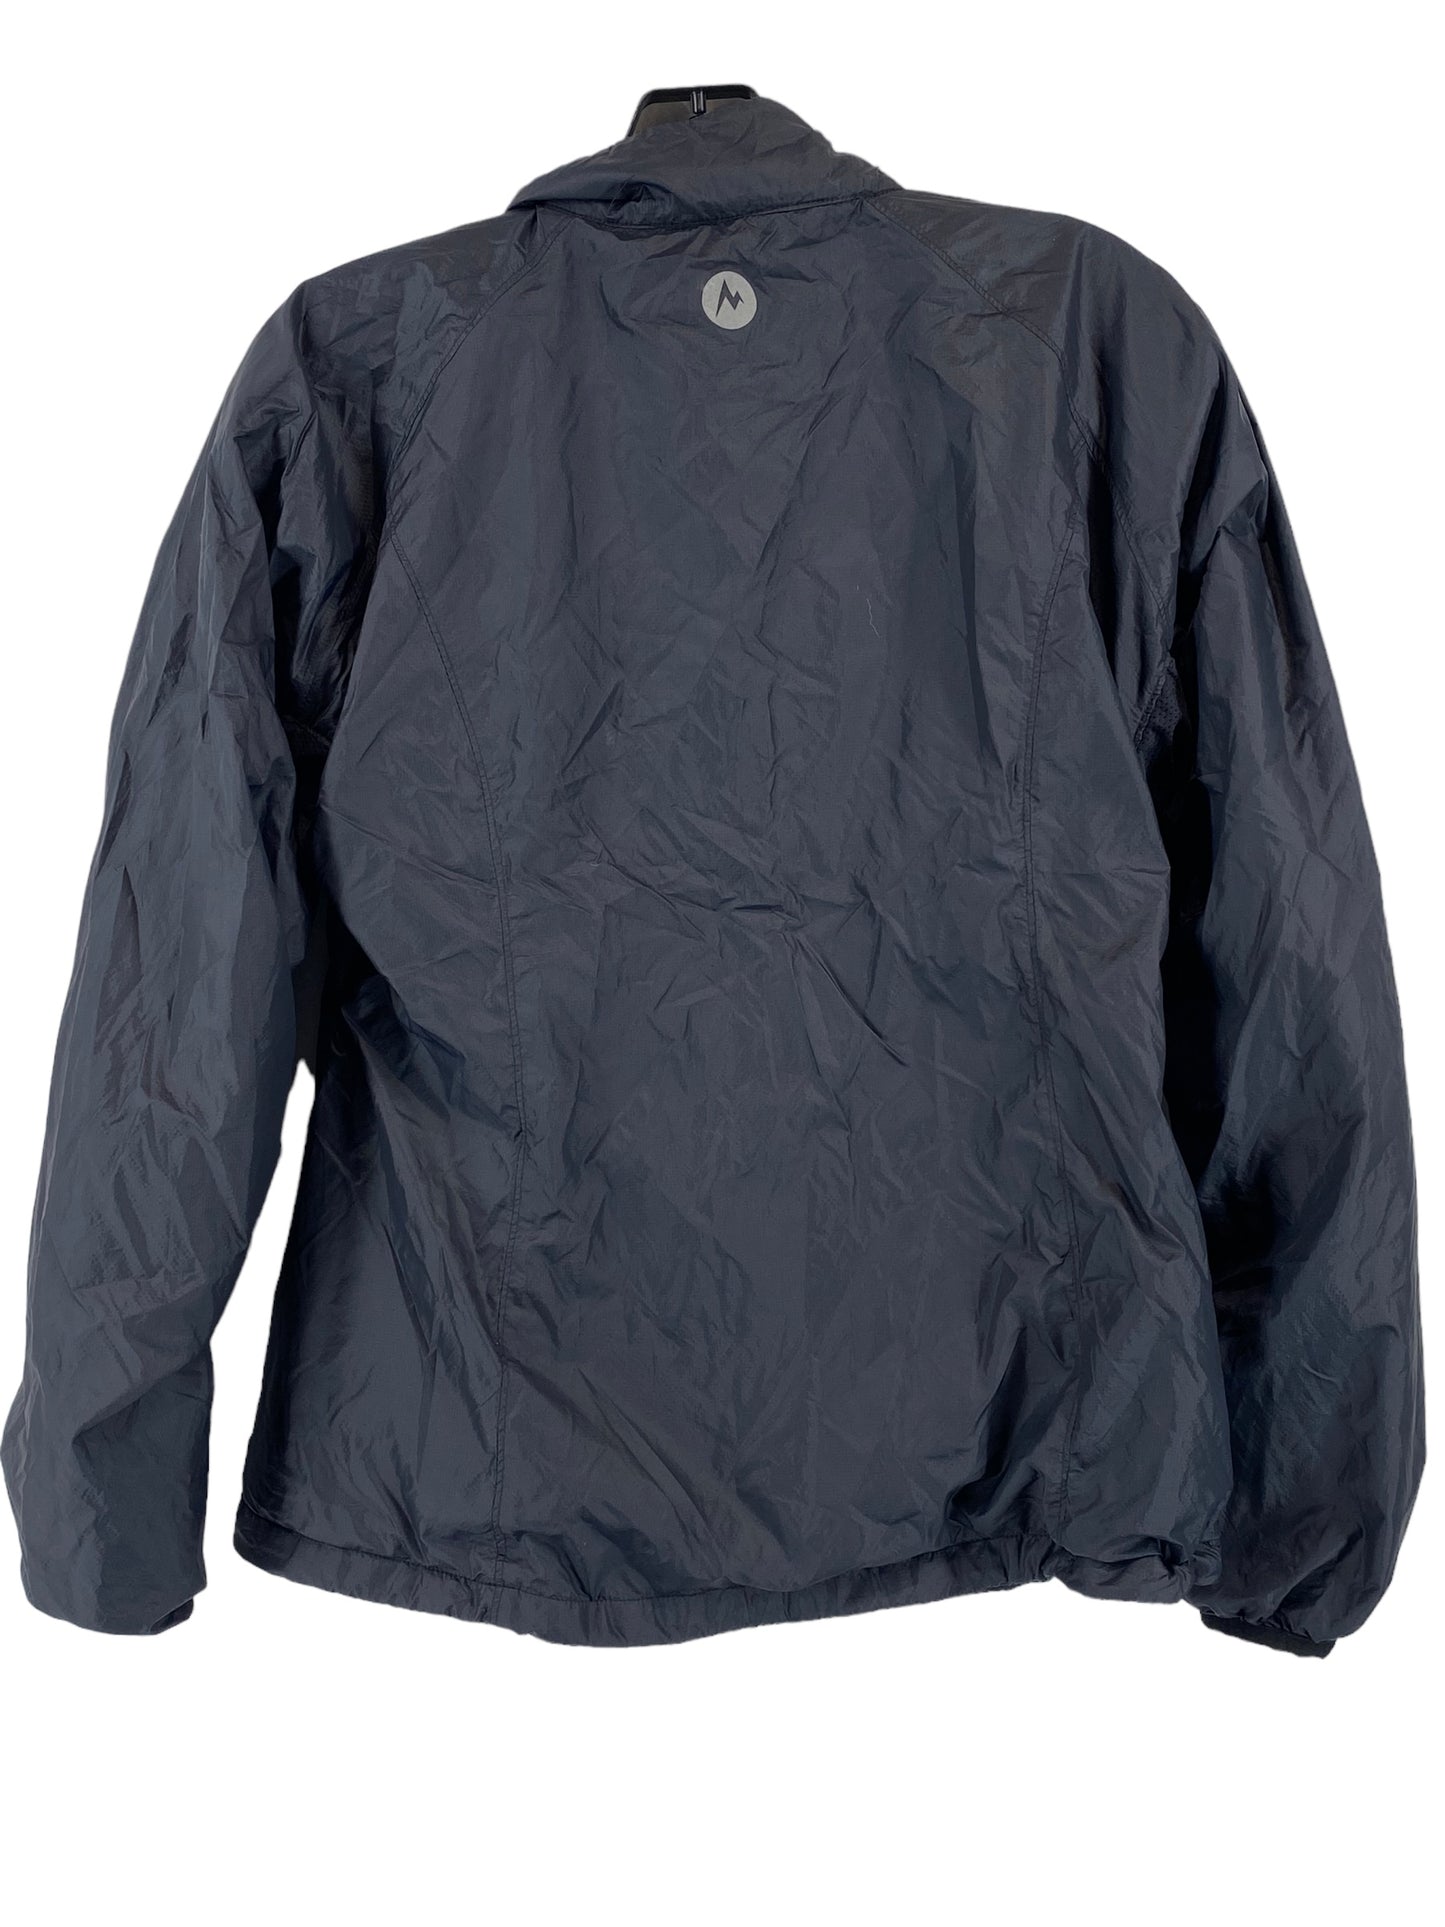 Jacket Windbreaker By Marmot  Size: M